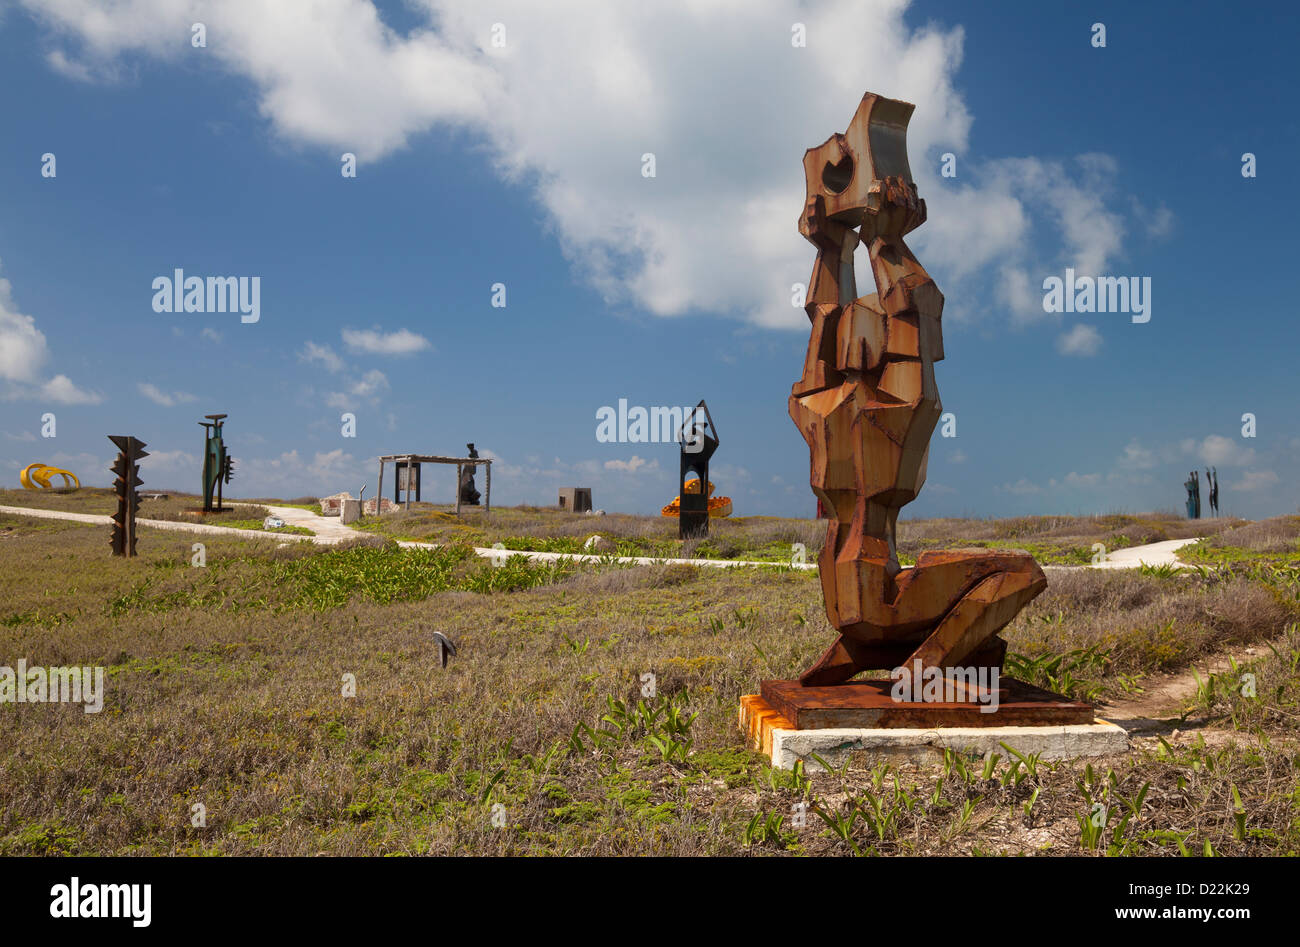 Sculpture Garden at Punta Sur, Isla Mujeres, Mexico Stock Photo